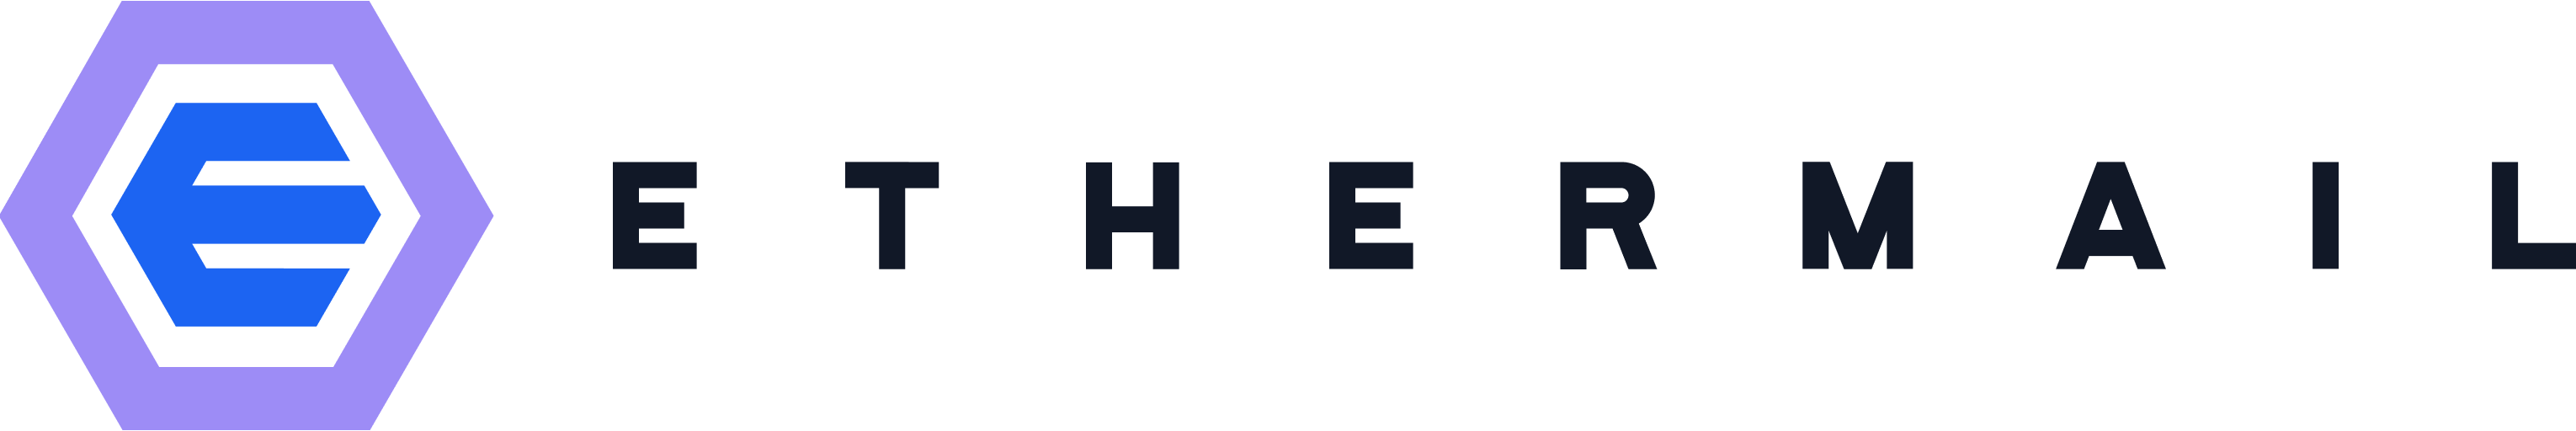 logo ethermail